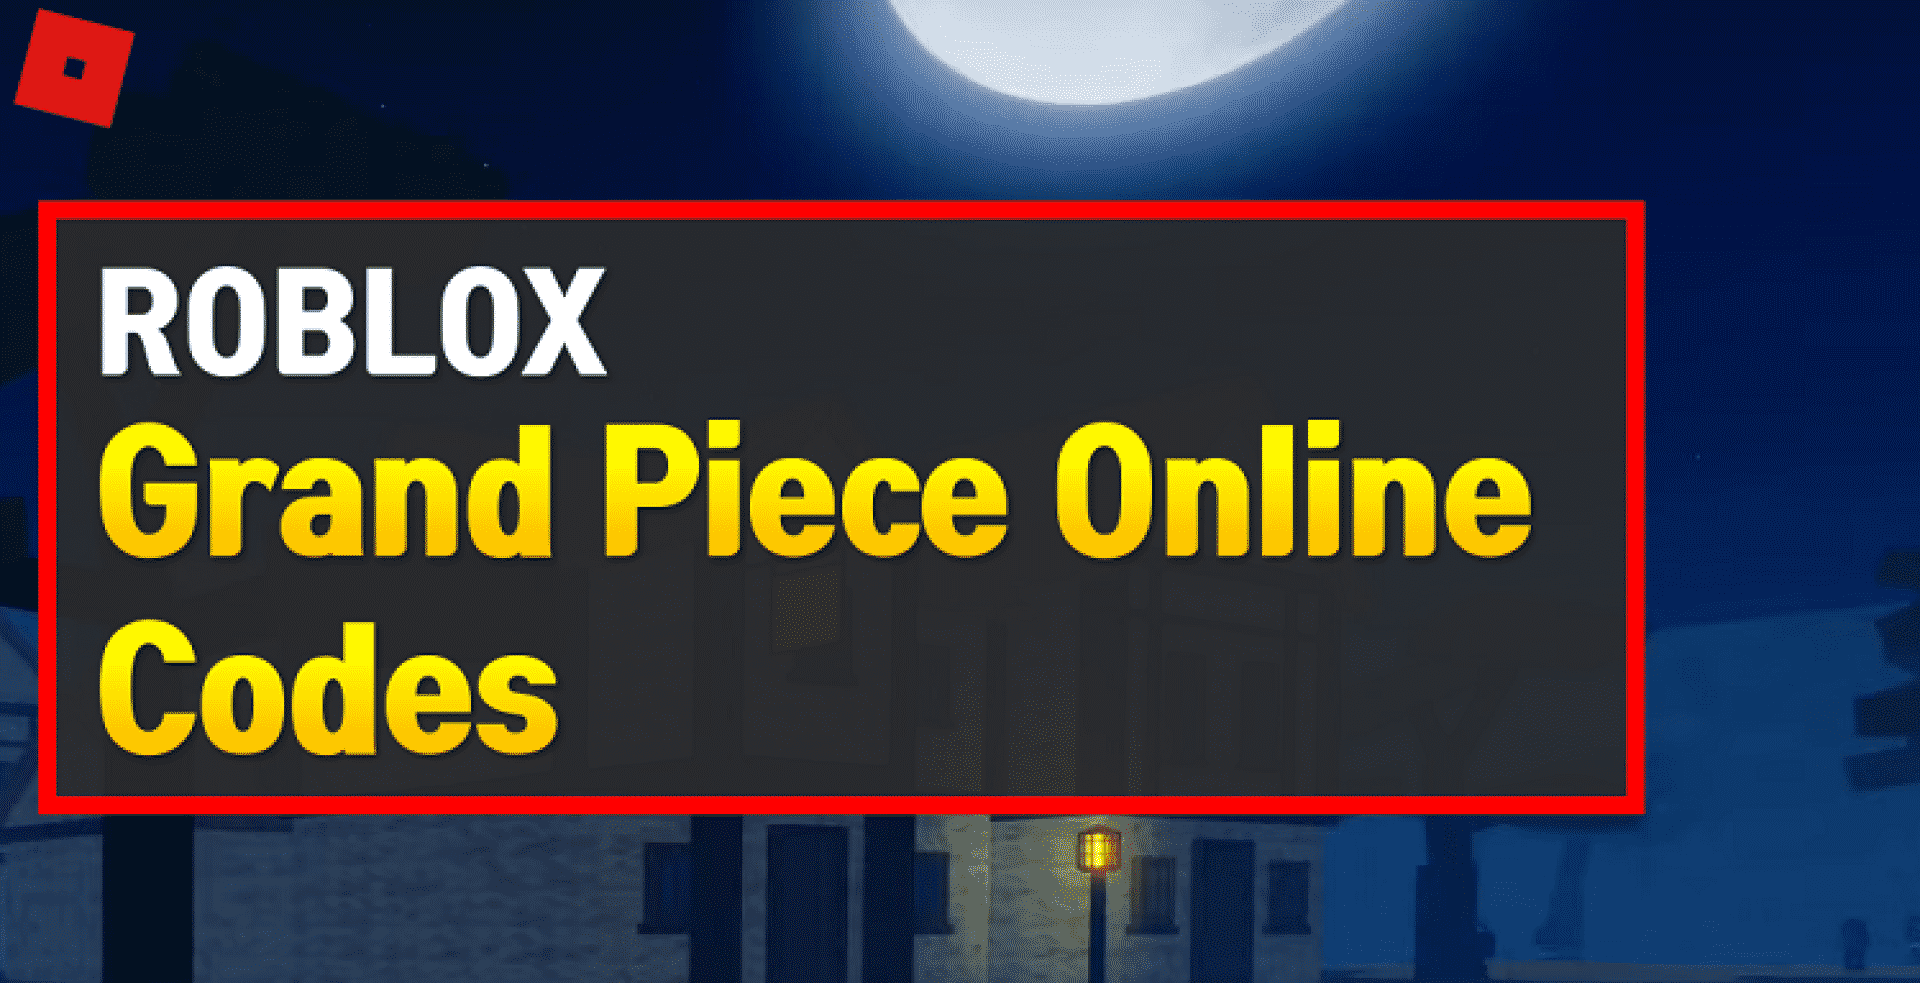 Roblox-Grand-Piece-Online-Codes